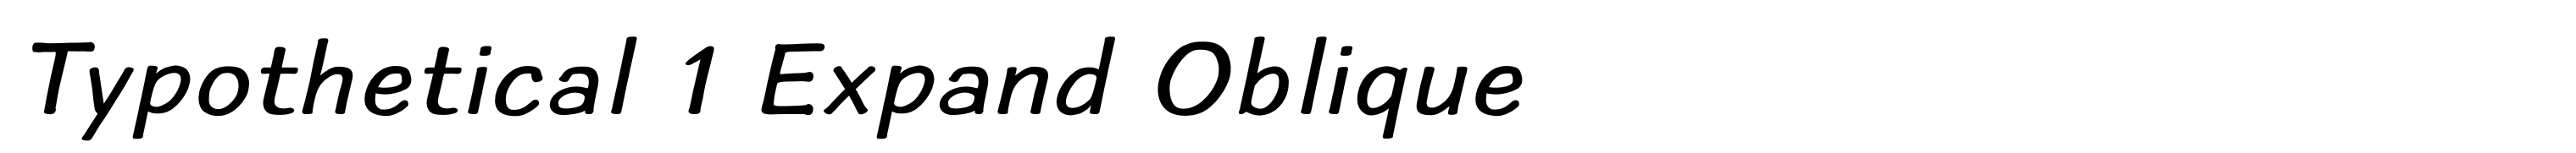 Typothetical 1 Expand Oblique